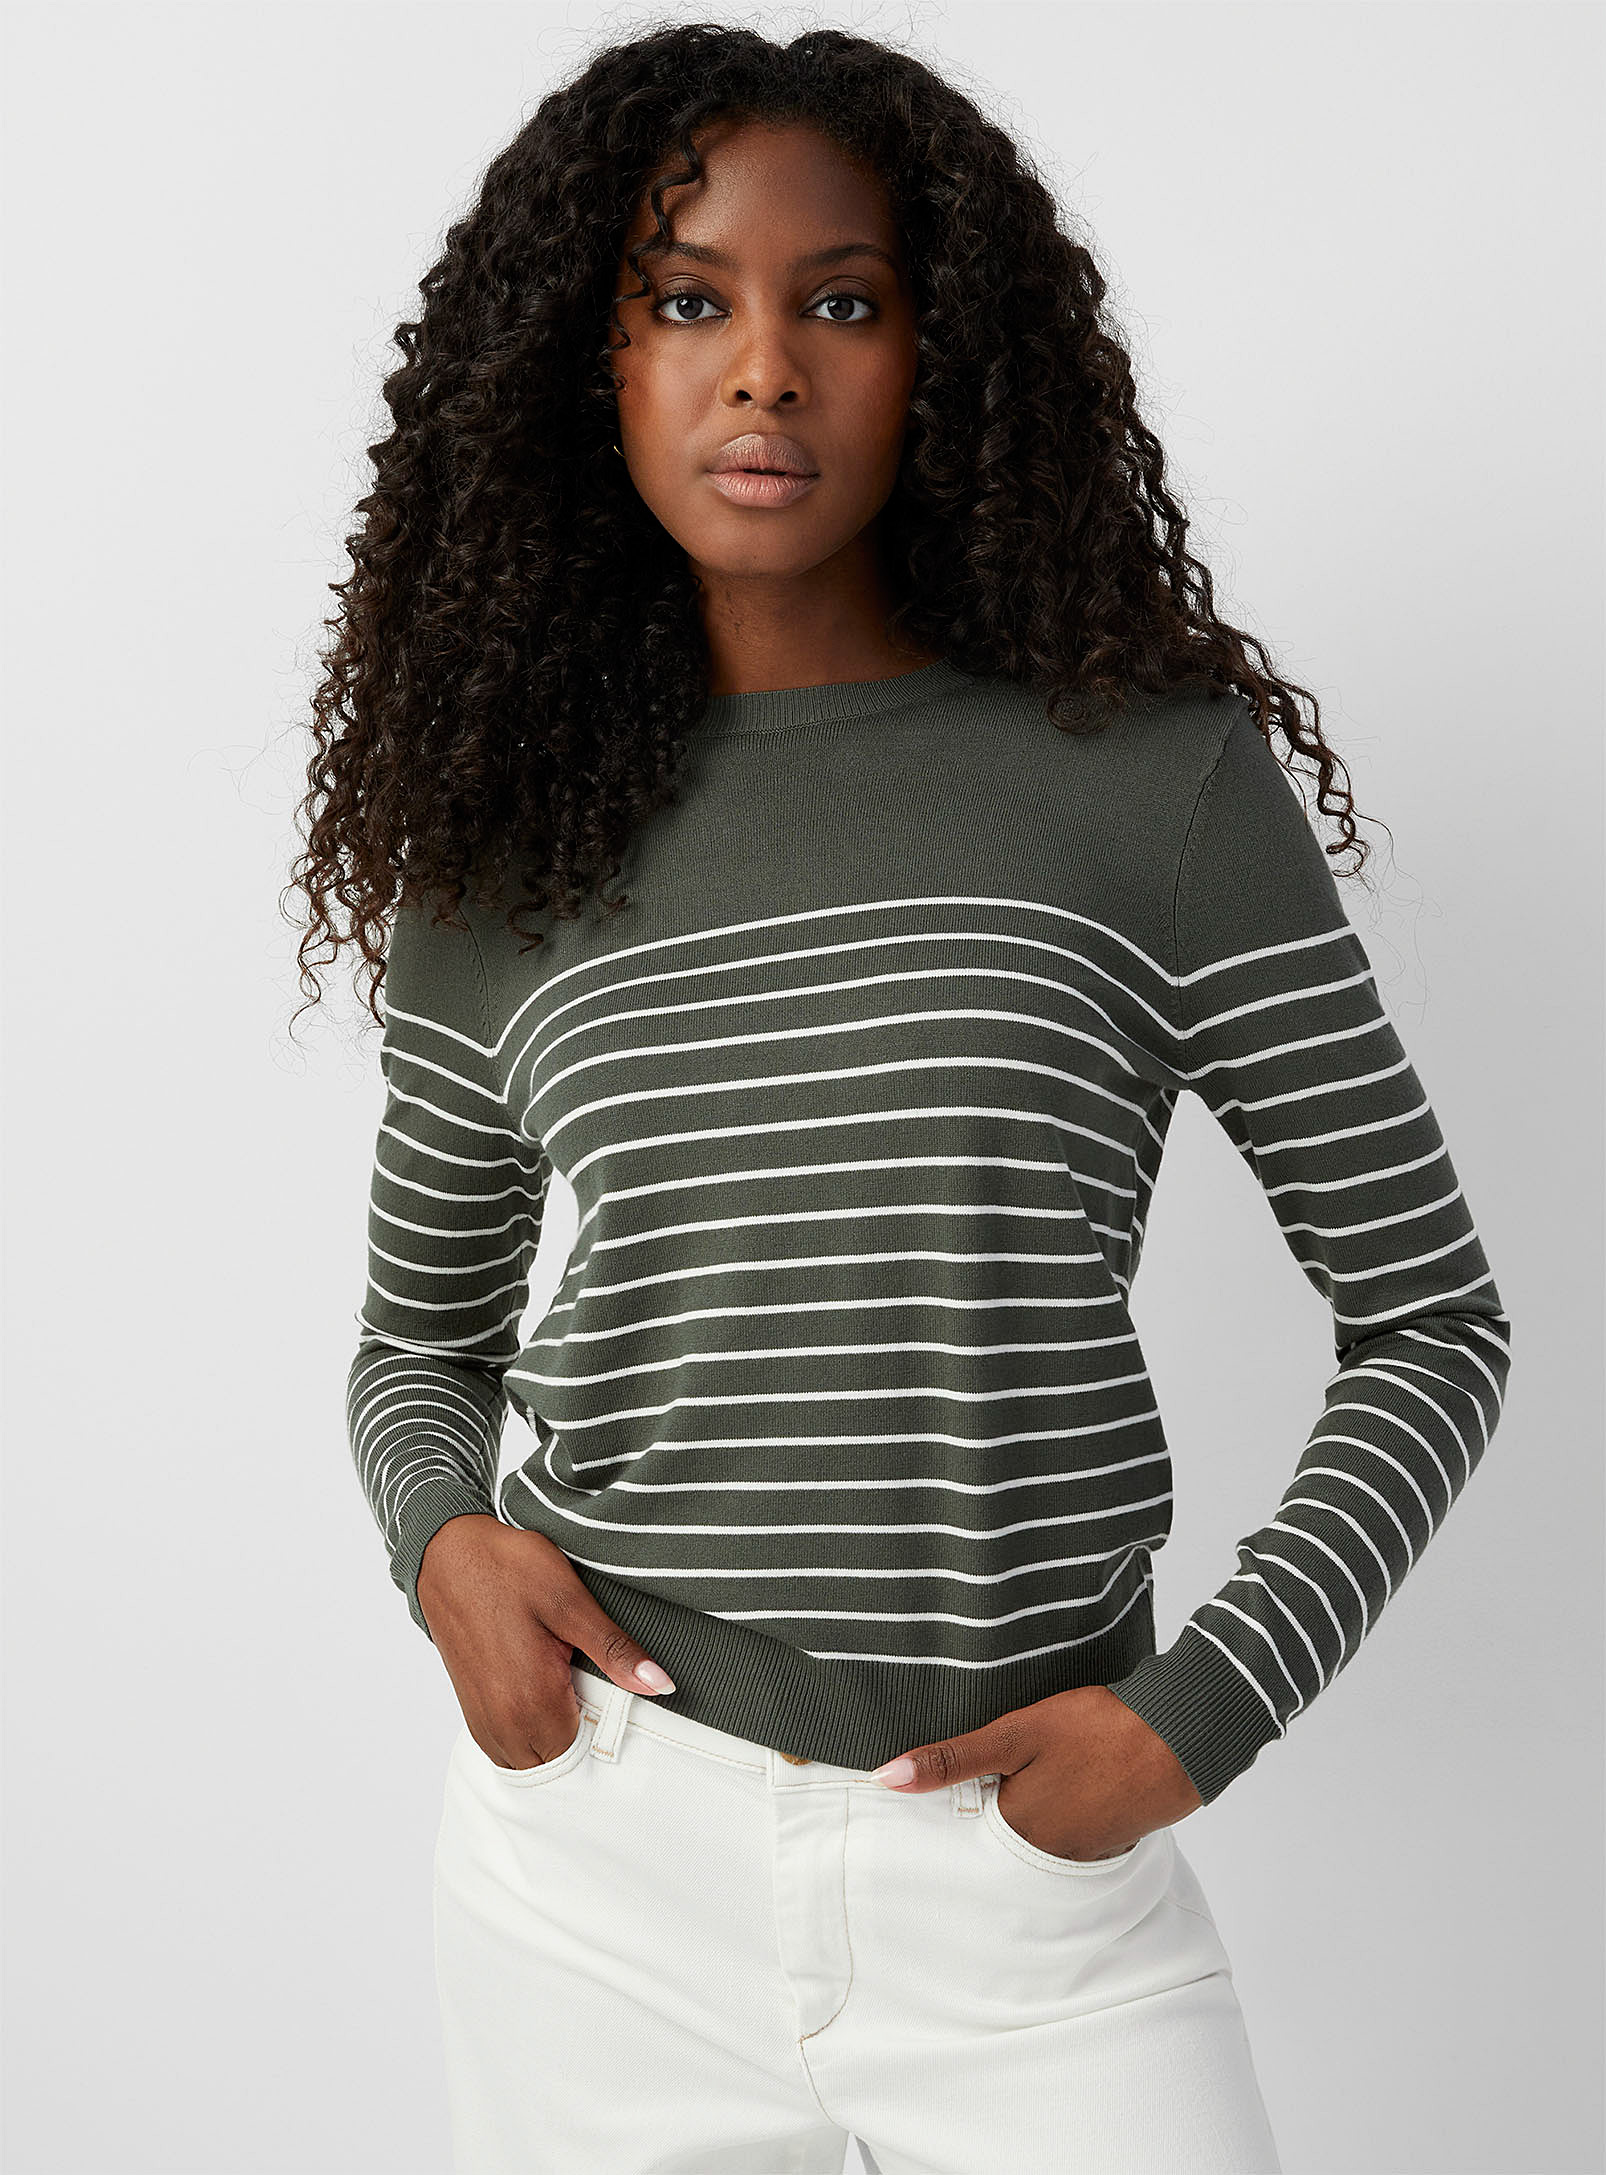 Contemporaine Light Knit Striped Sweater In Khaki